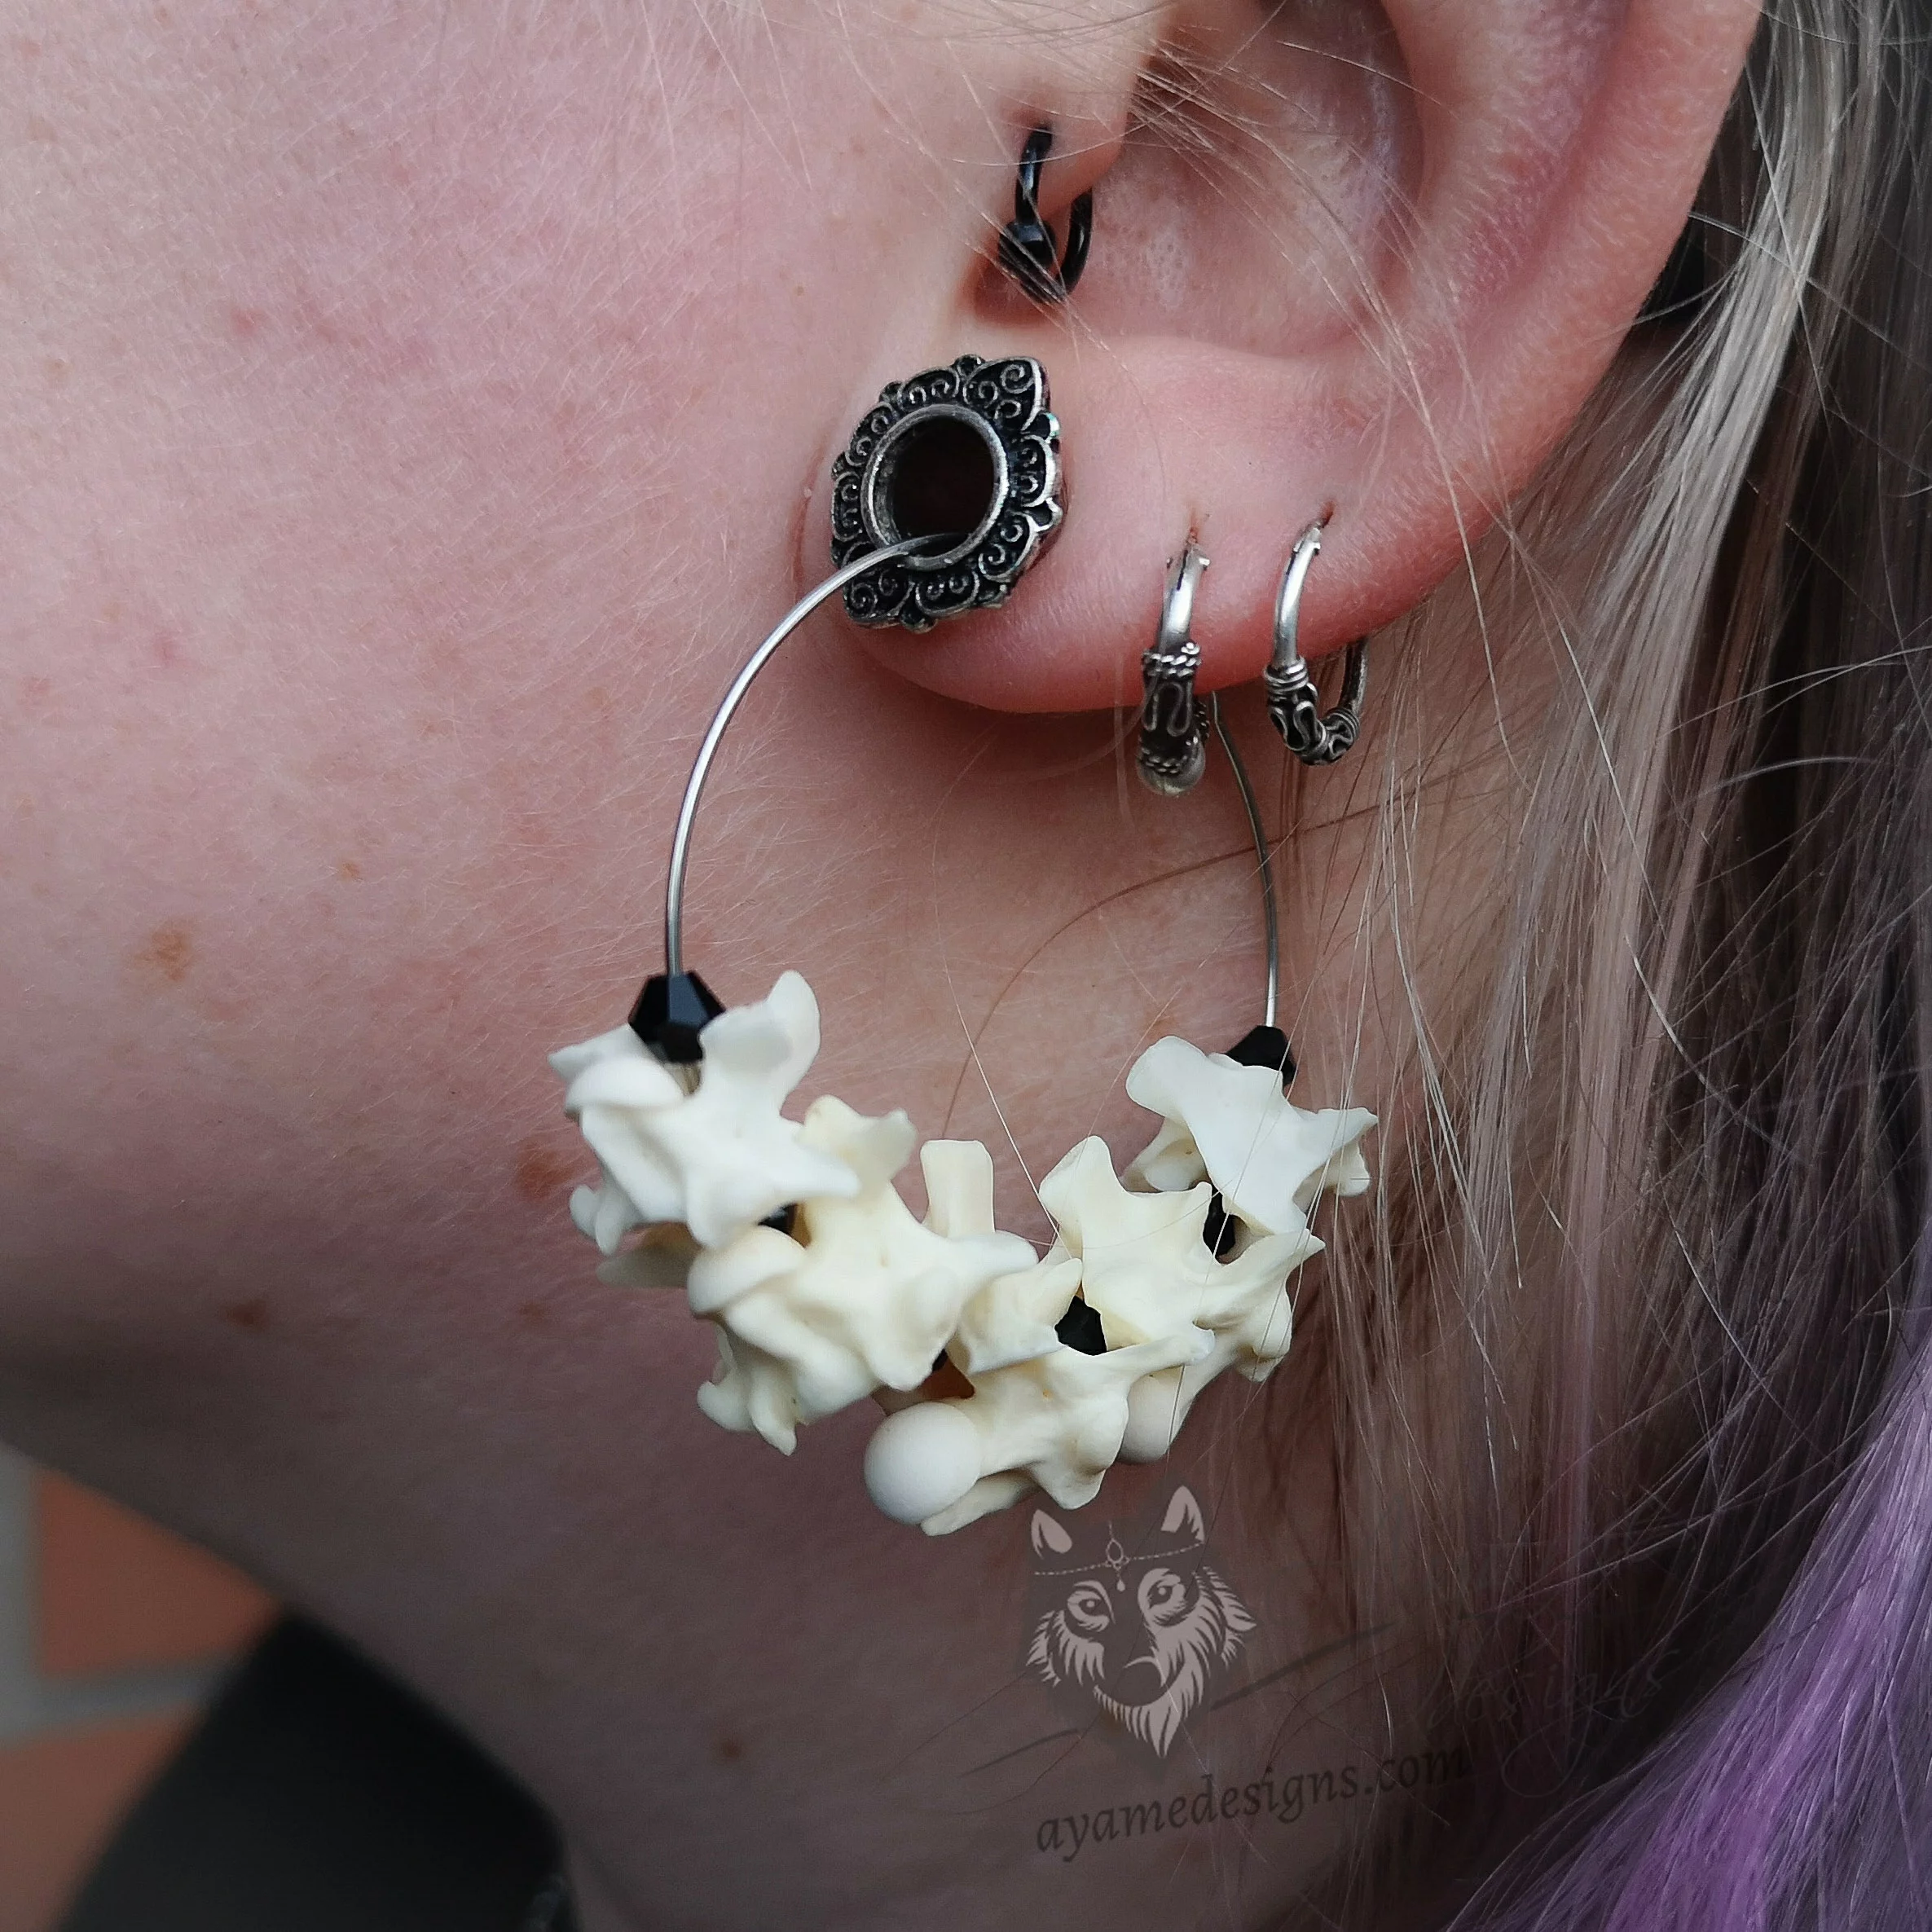 Handmade stainless steel hoop earrings with snake vertebrae and black Austrian crystal beads